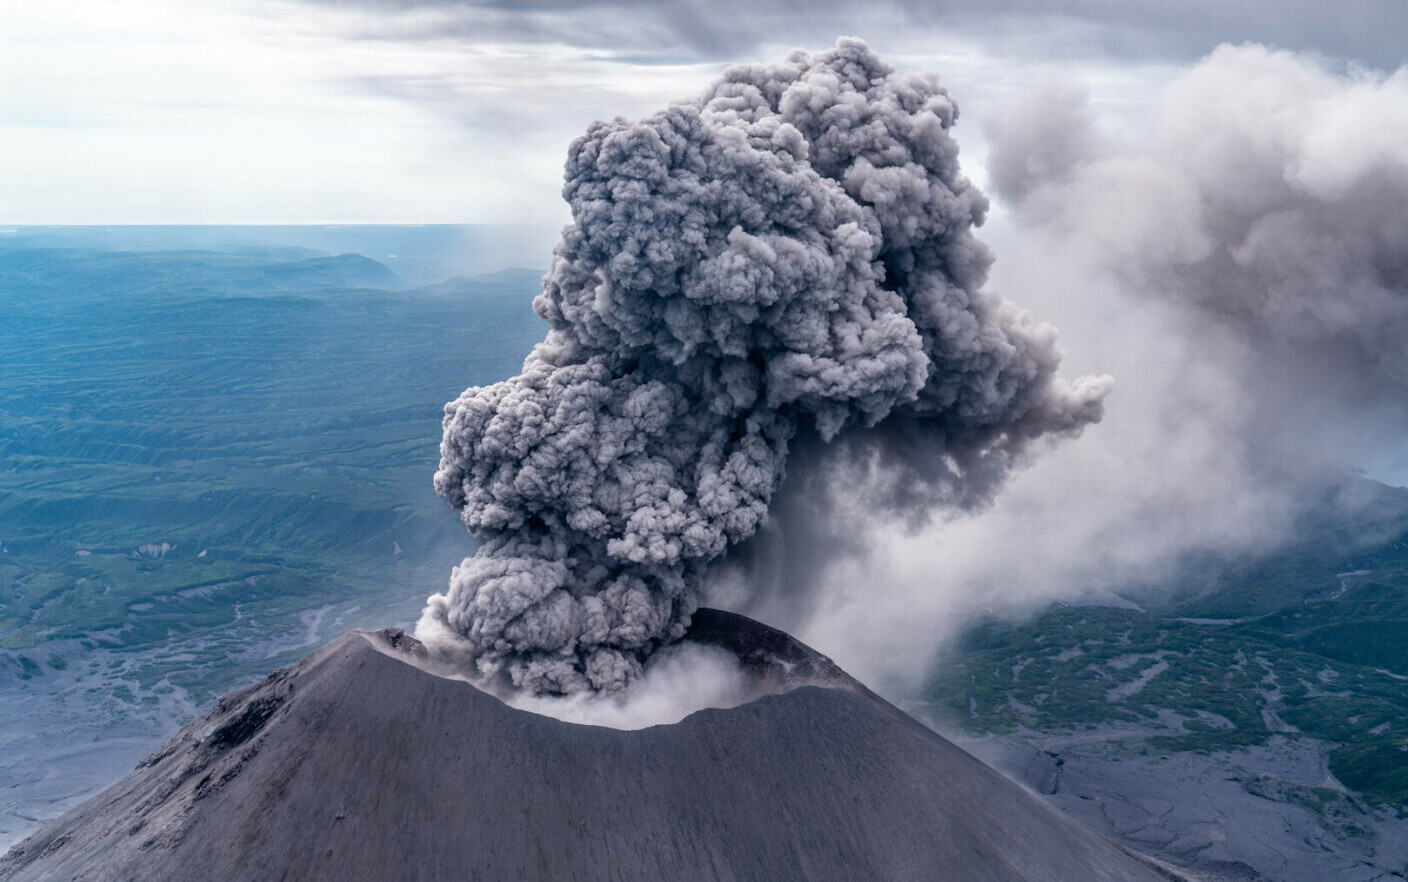 Un vulcan din Rusia a erupt. Nor de cenușă extins pe 1.000 de kilometri